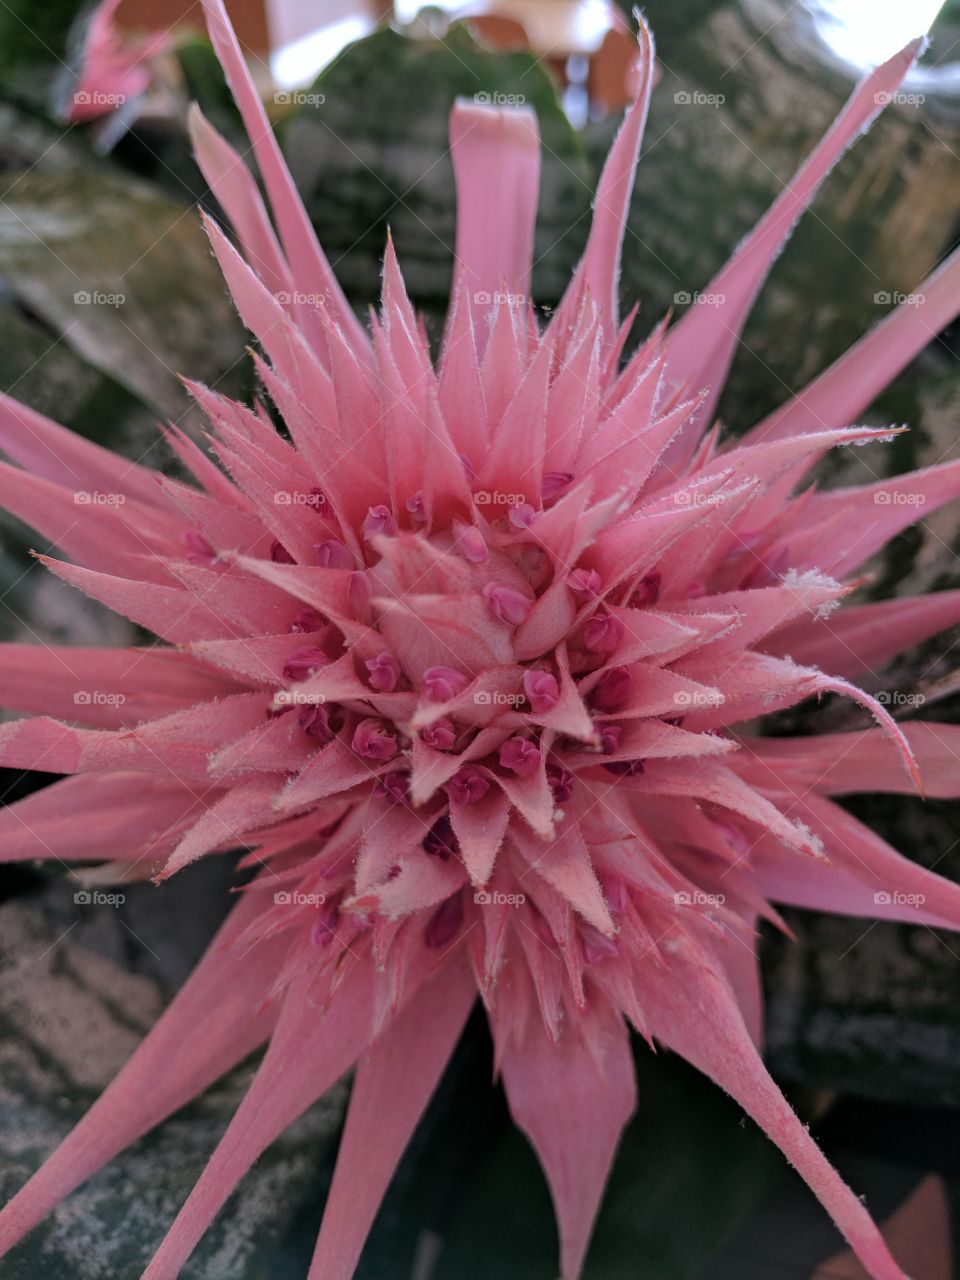 gorgeous pink bromeliad bloom